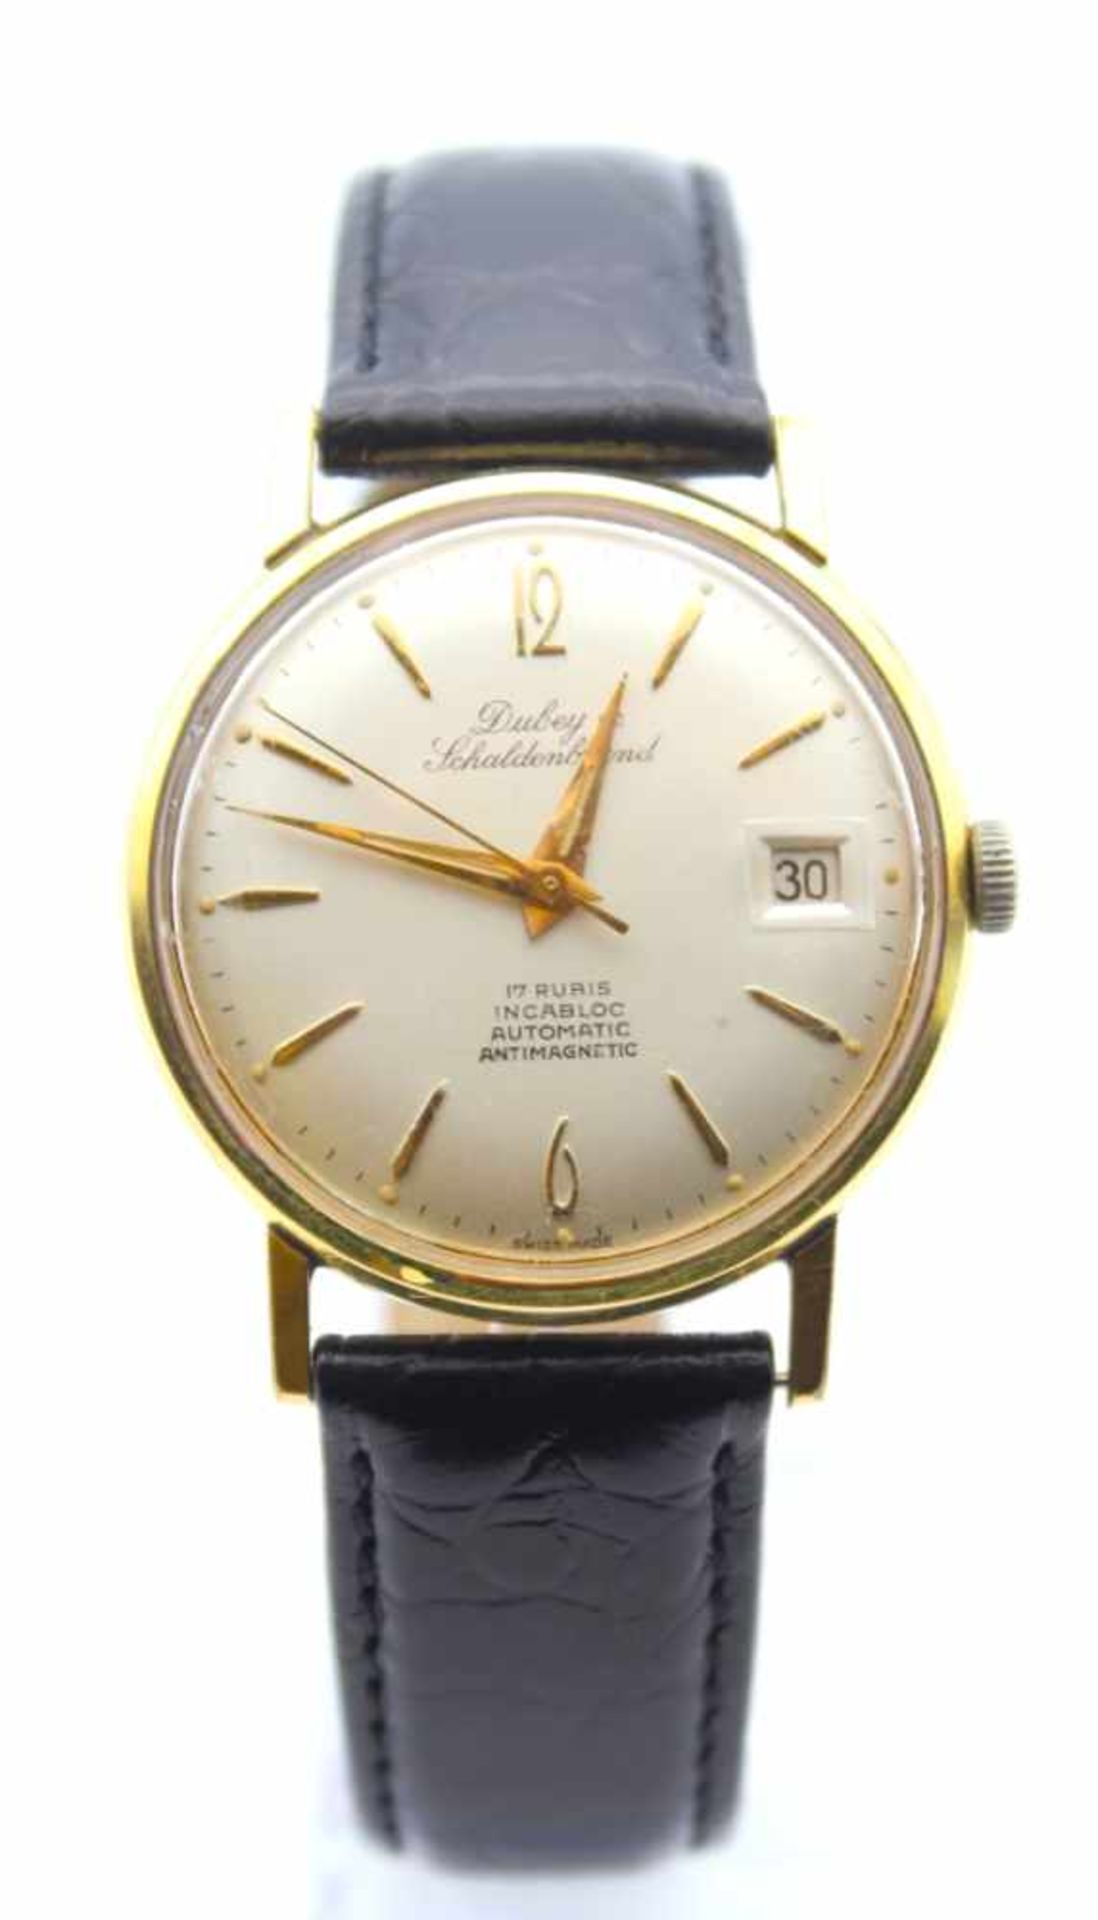 Armbanduhr - Marke Dubey&Schaldenbrand silberfarbenes Zifferblatt mit gold. Stabindexen und